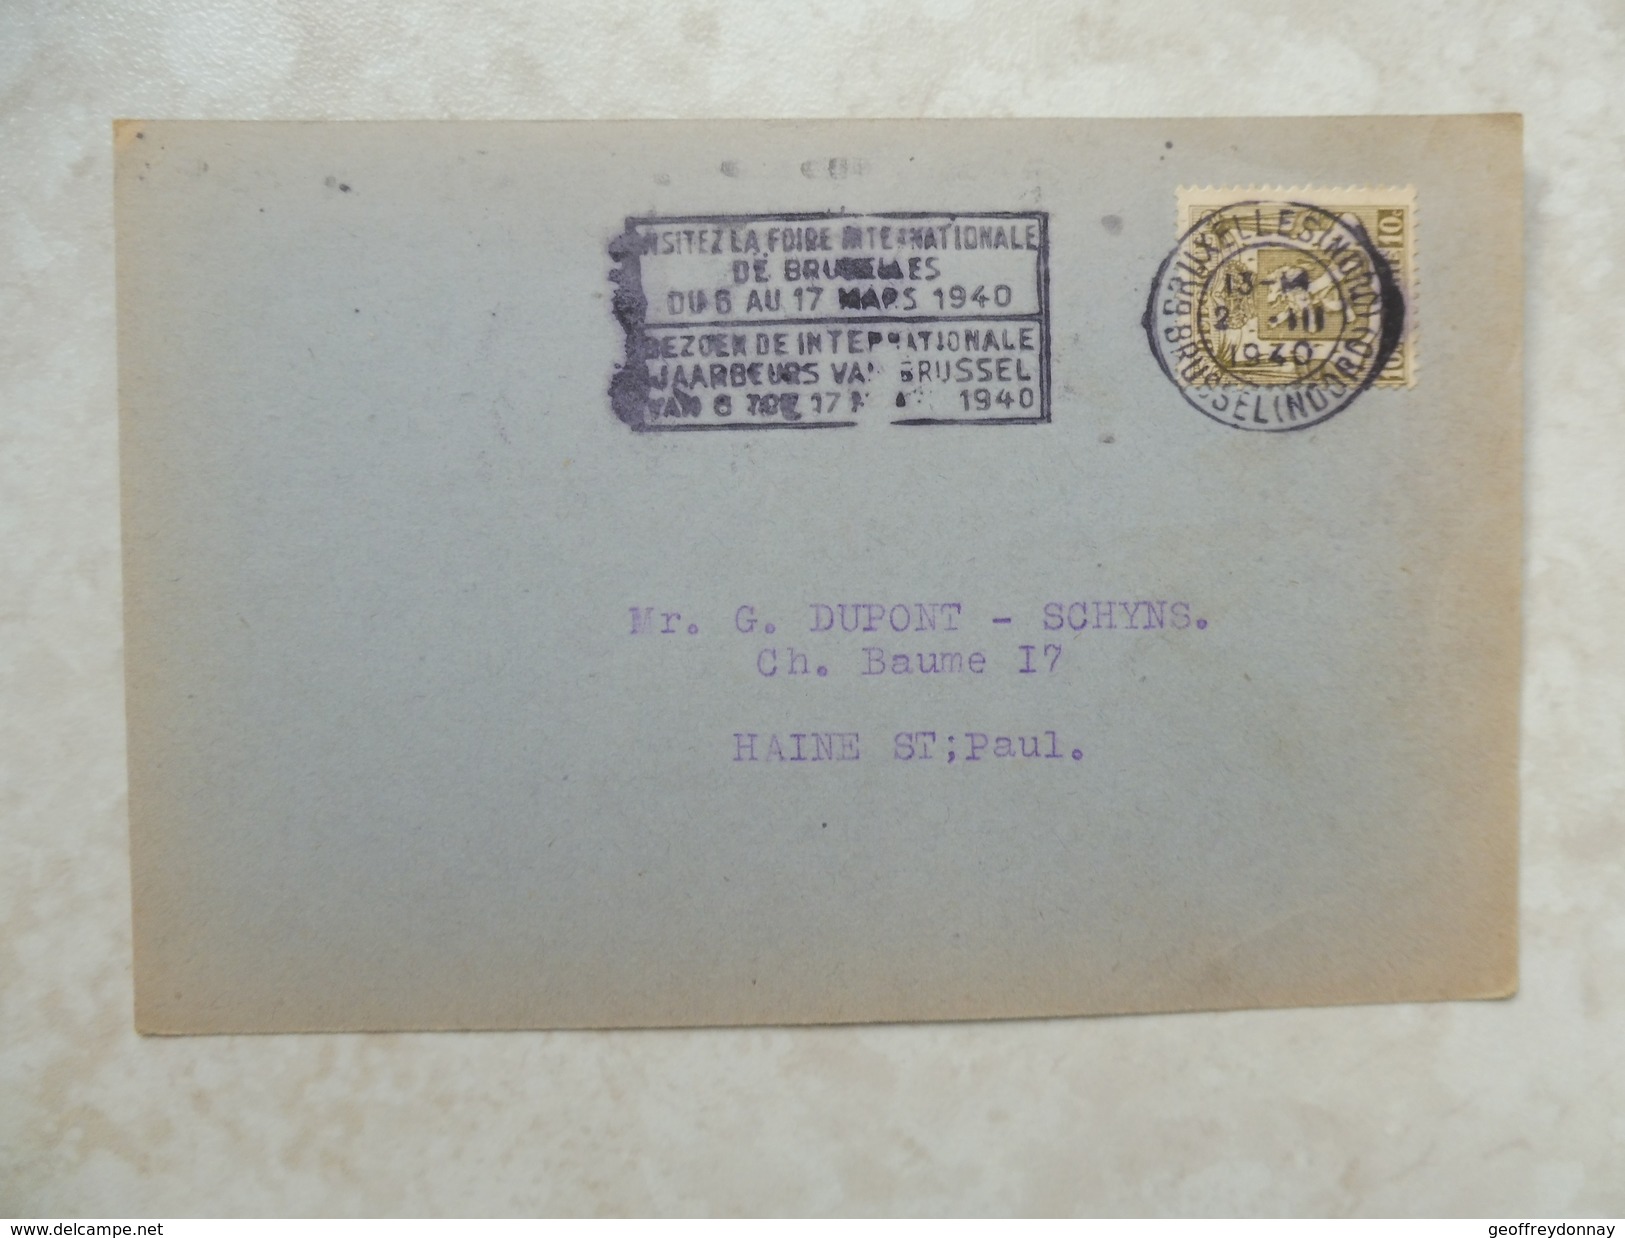 document en carte cachet bruxelles 9 différents 1939-40